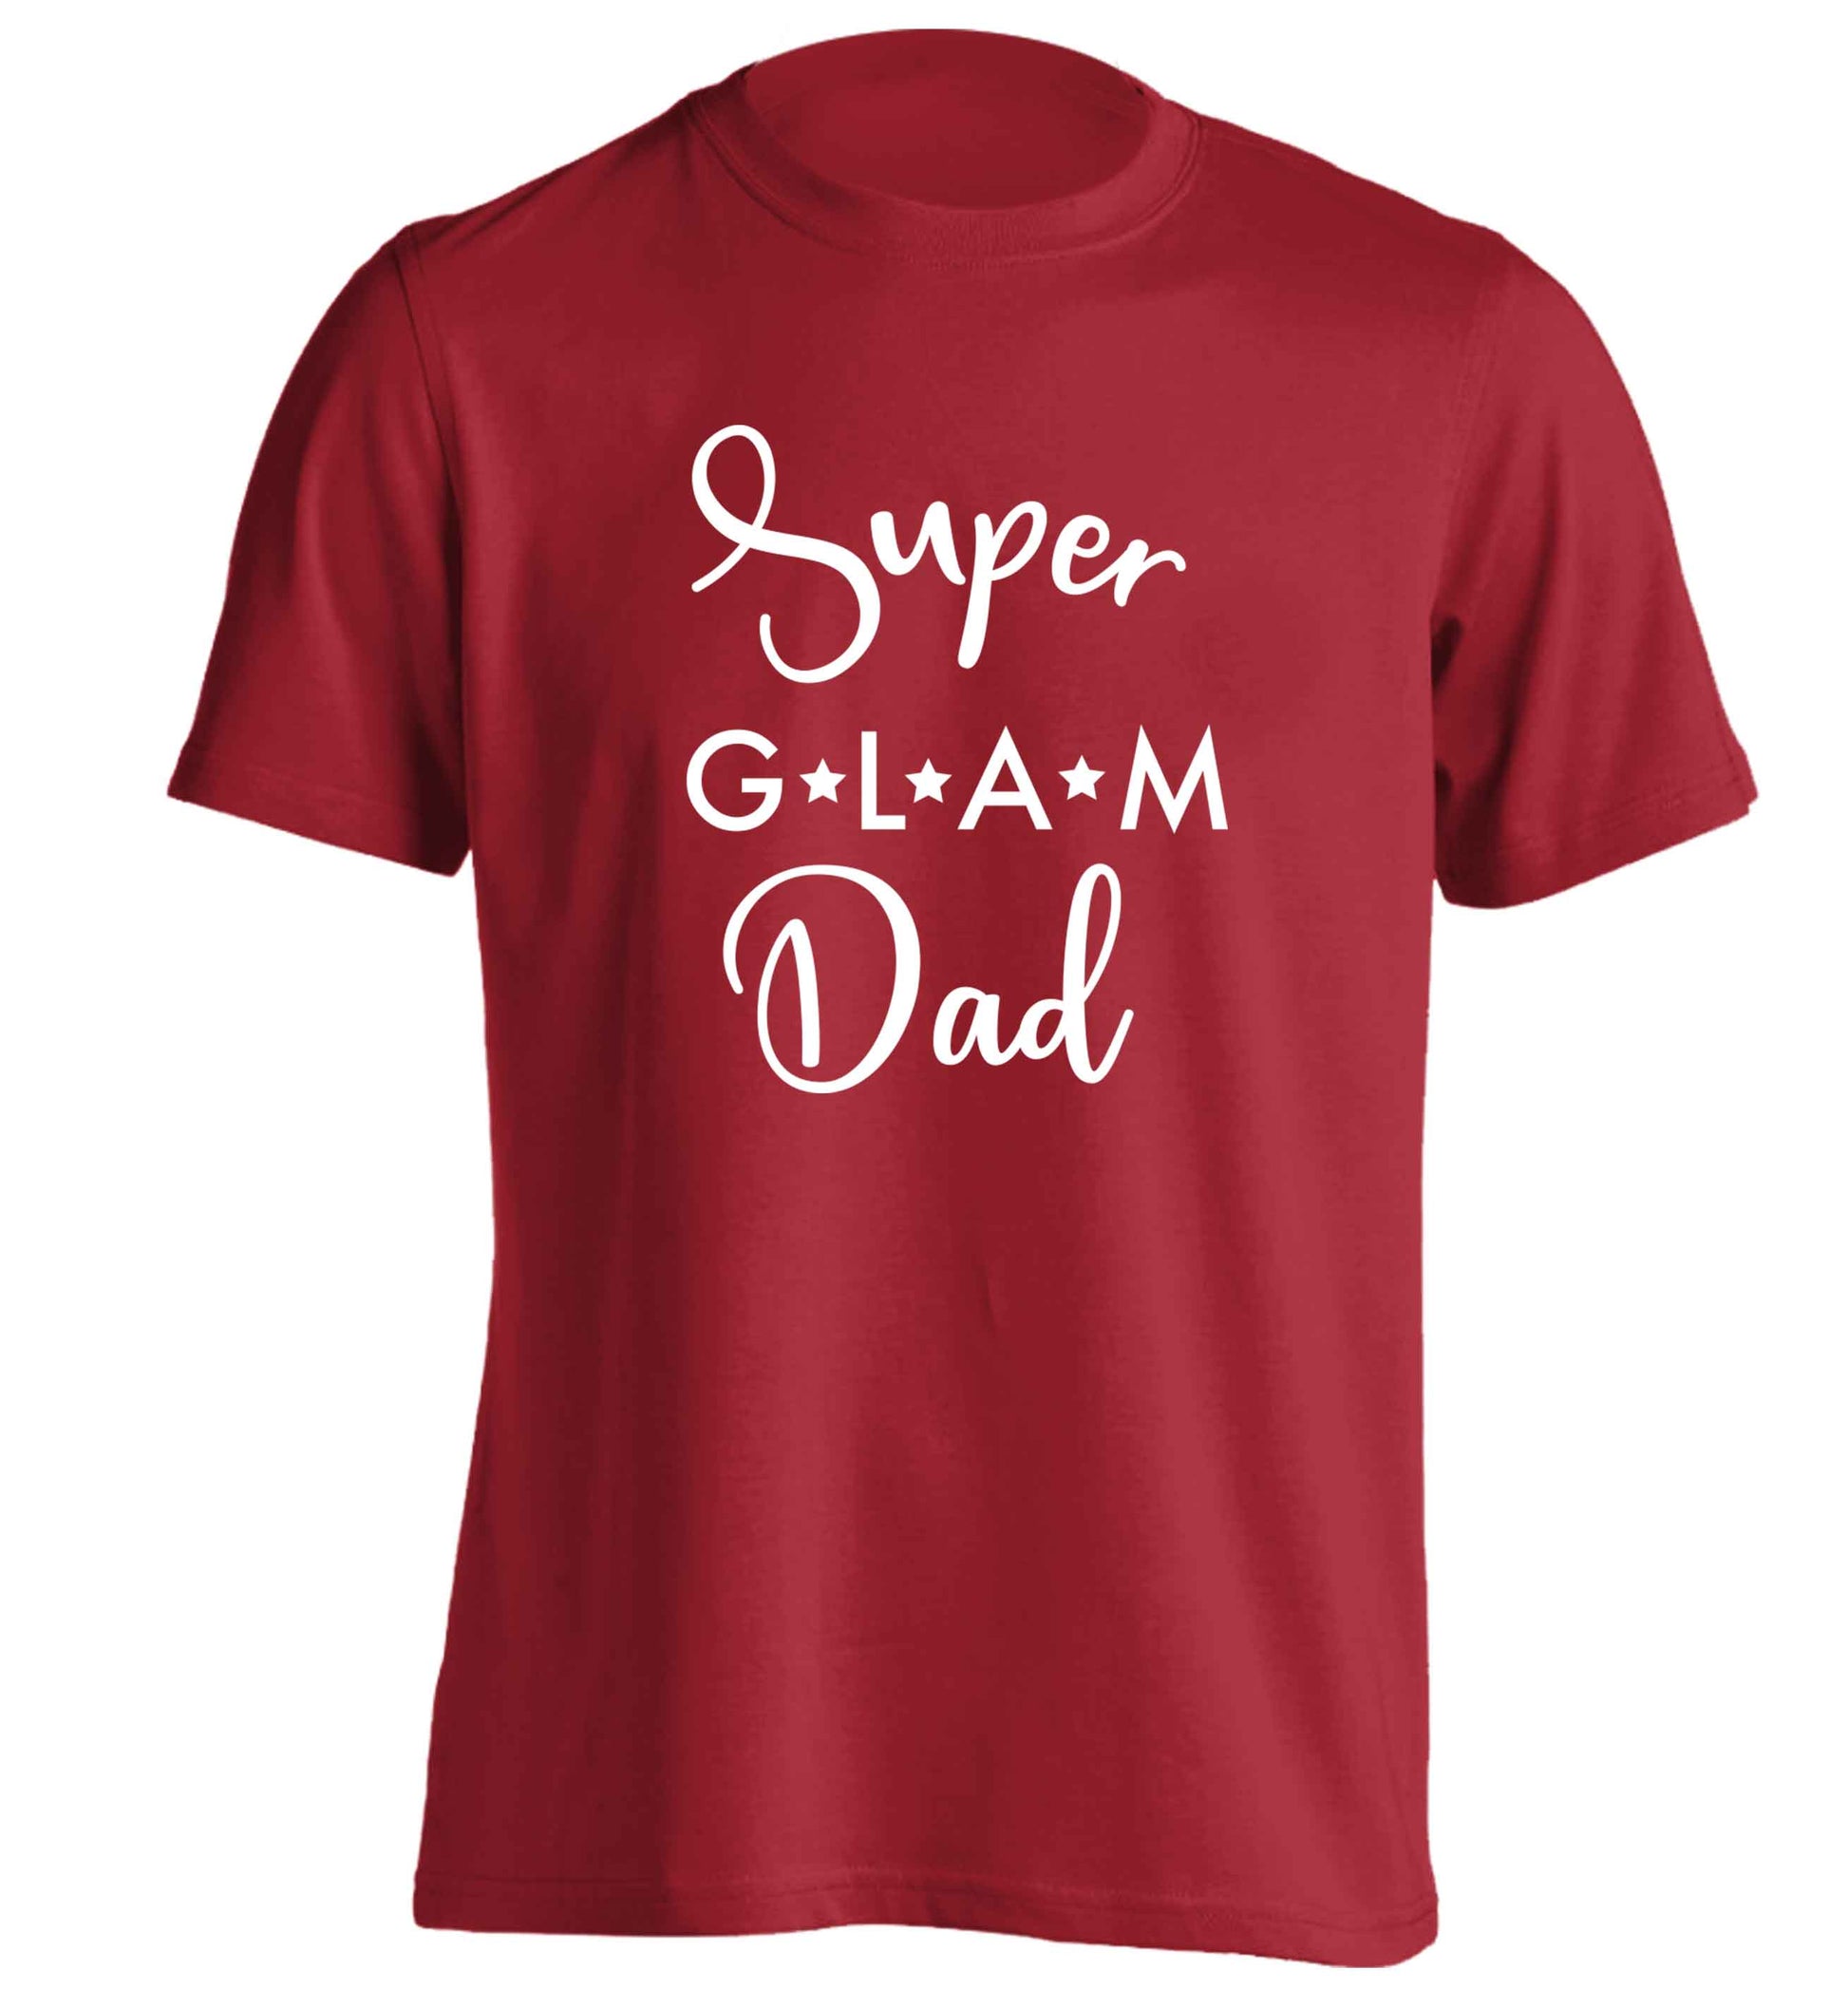 Super glam Dad adults unisex red Tshirt 2XL